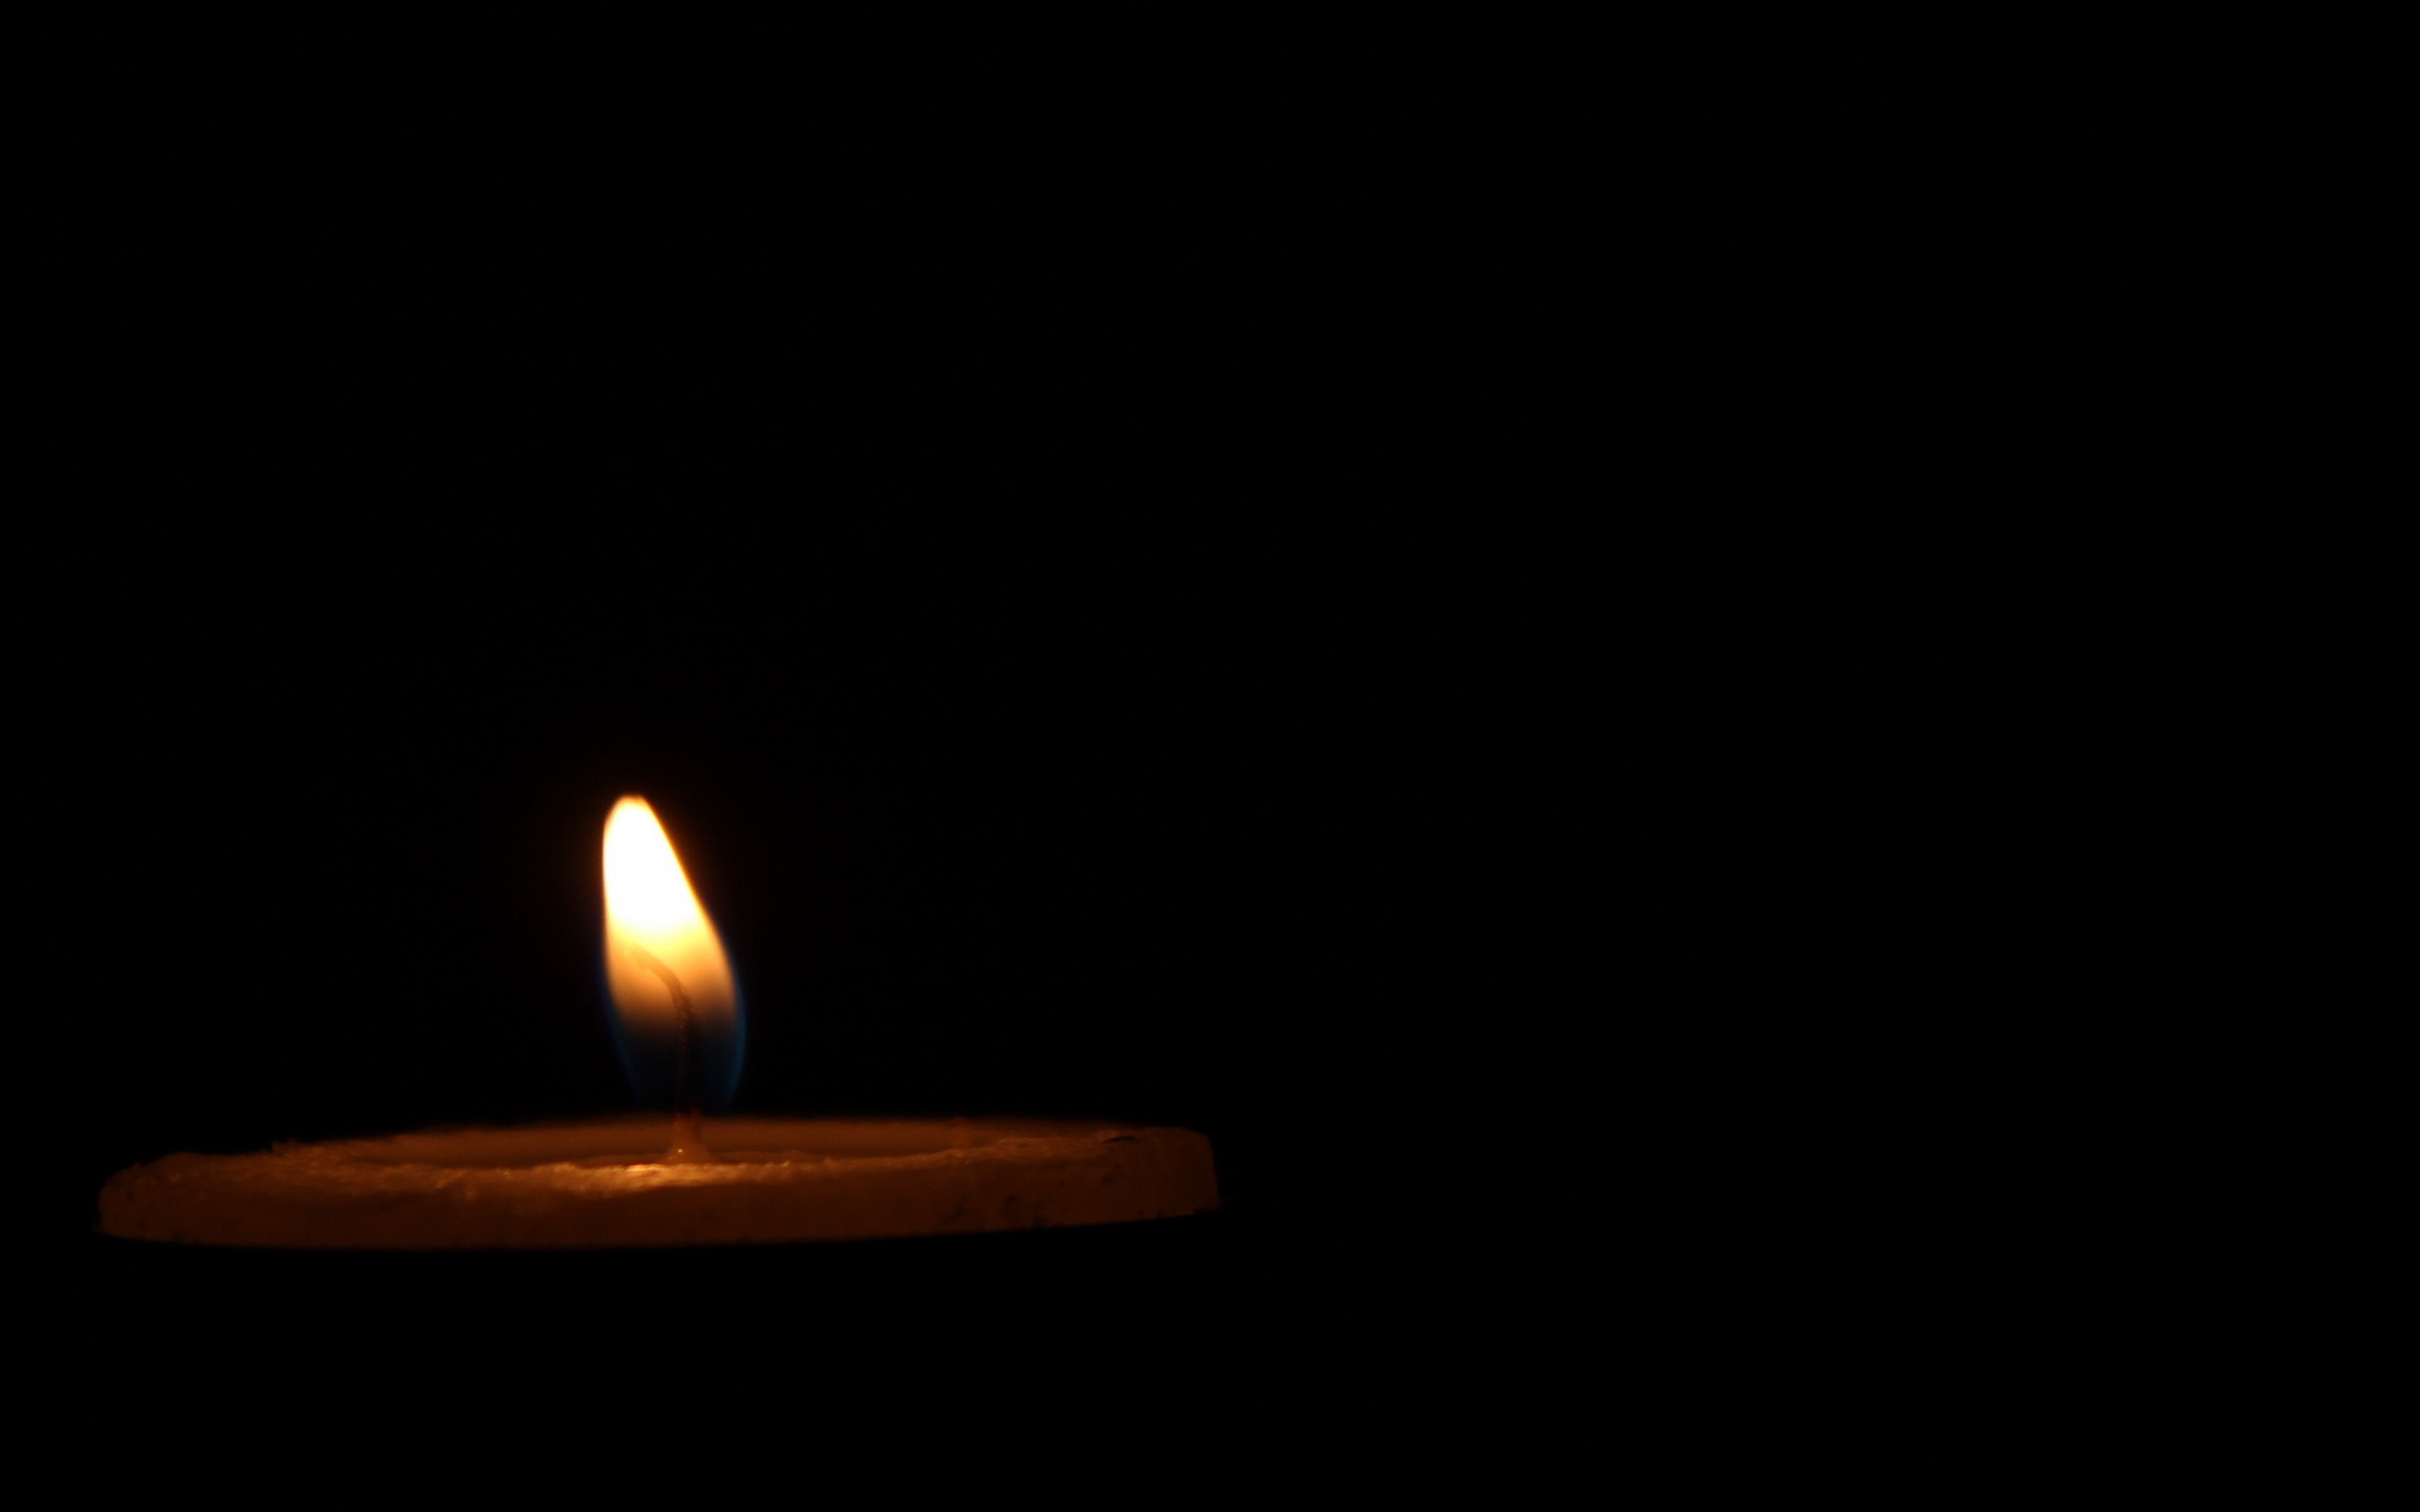 Видео свеча на черном фоне. Свеча на черном фоне. Свеча на темном фоне. Траур свеча на черном фоне. Свеча памяти на черном фоне.